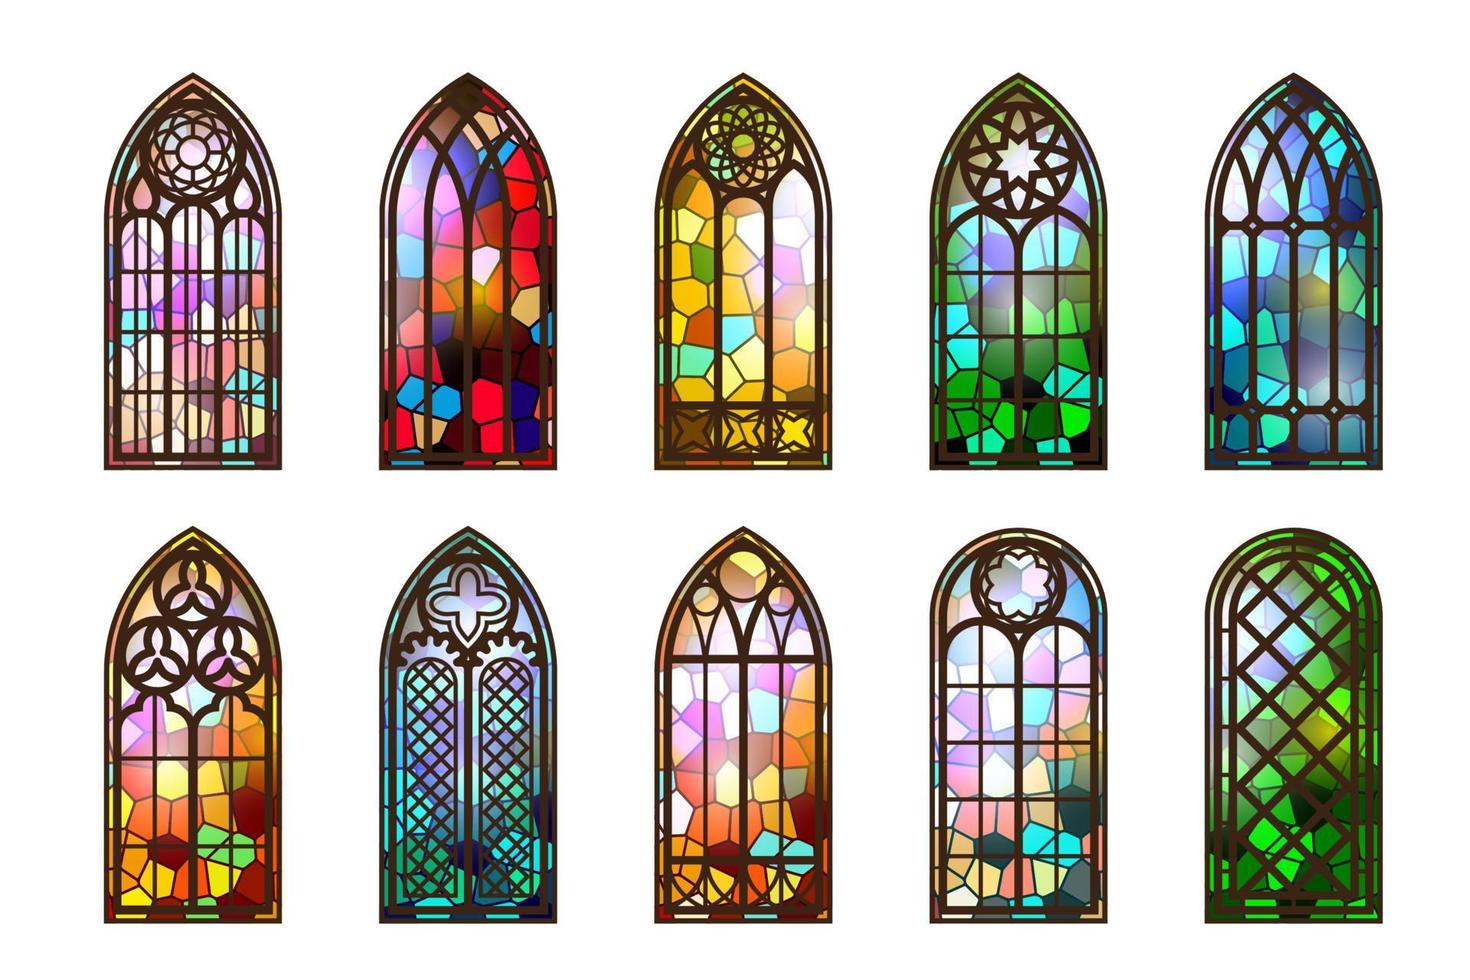 gótico manchado vaso ventanas Iglesia medieval arcos católico catedral mosaico marcos antiguo arquitectura diseño. vector conjunto